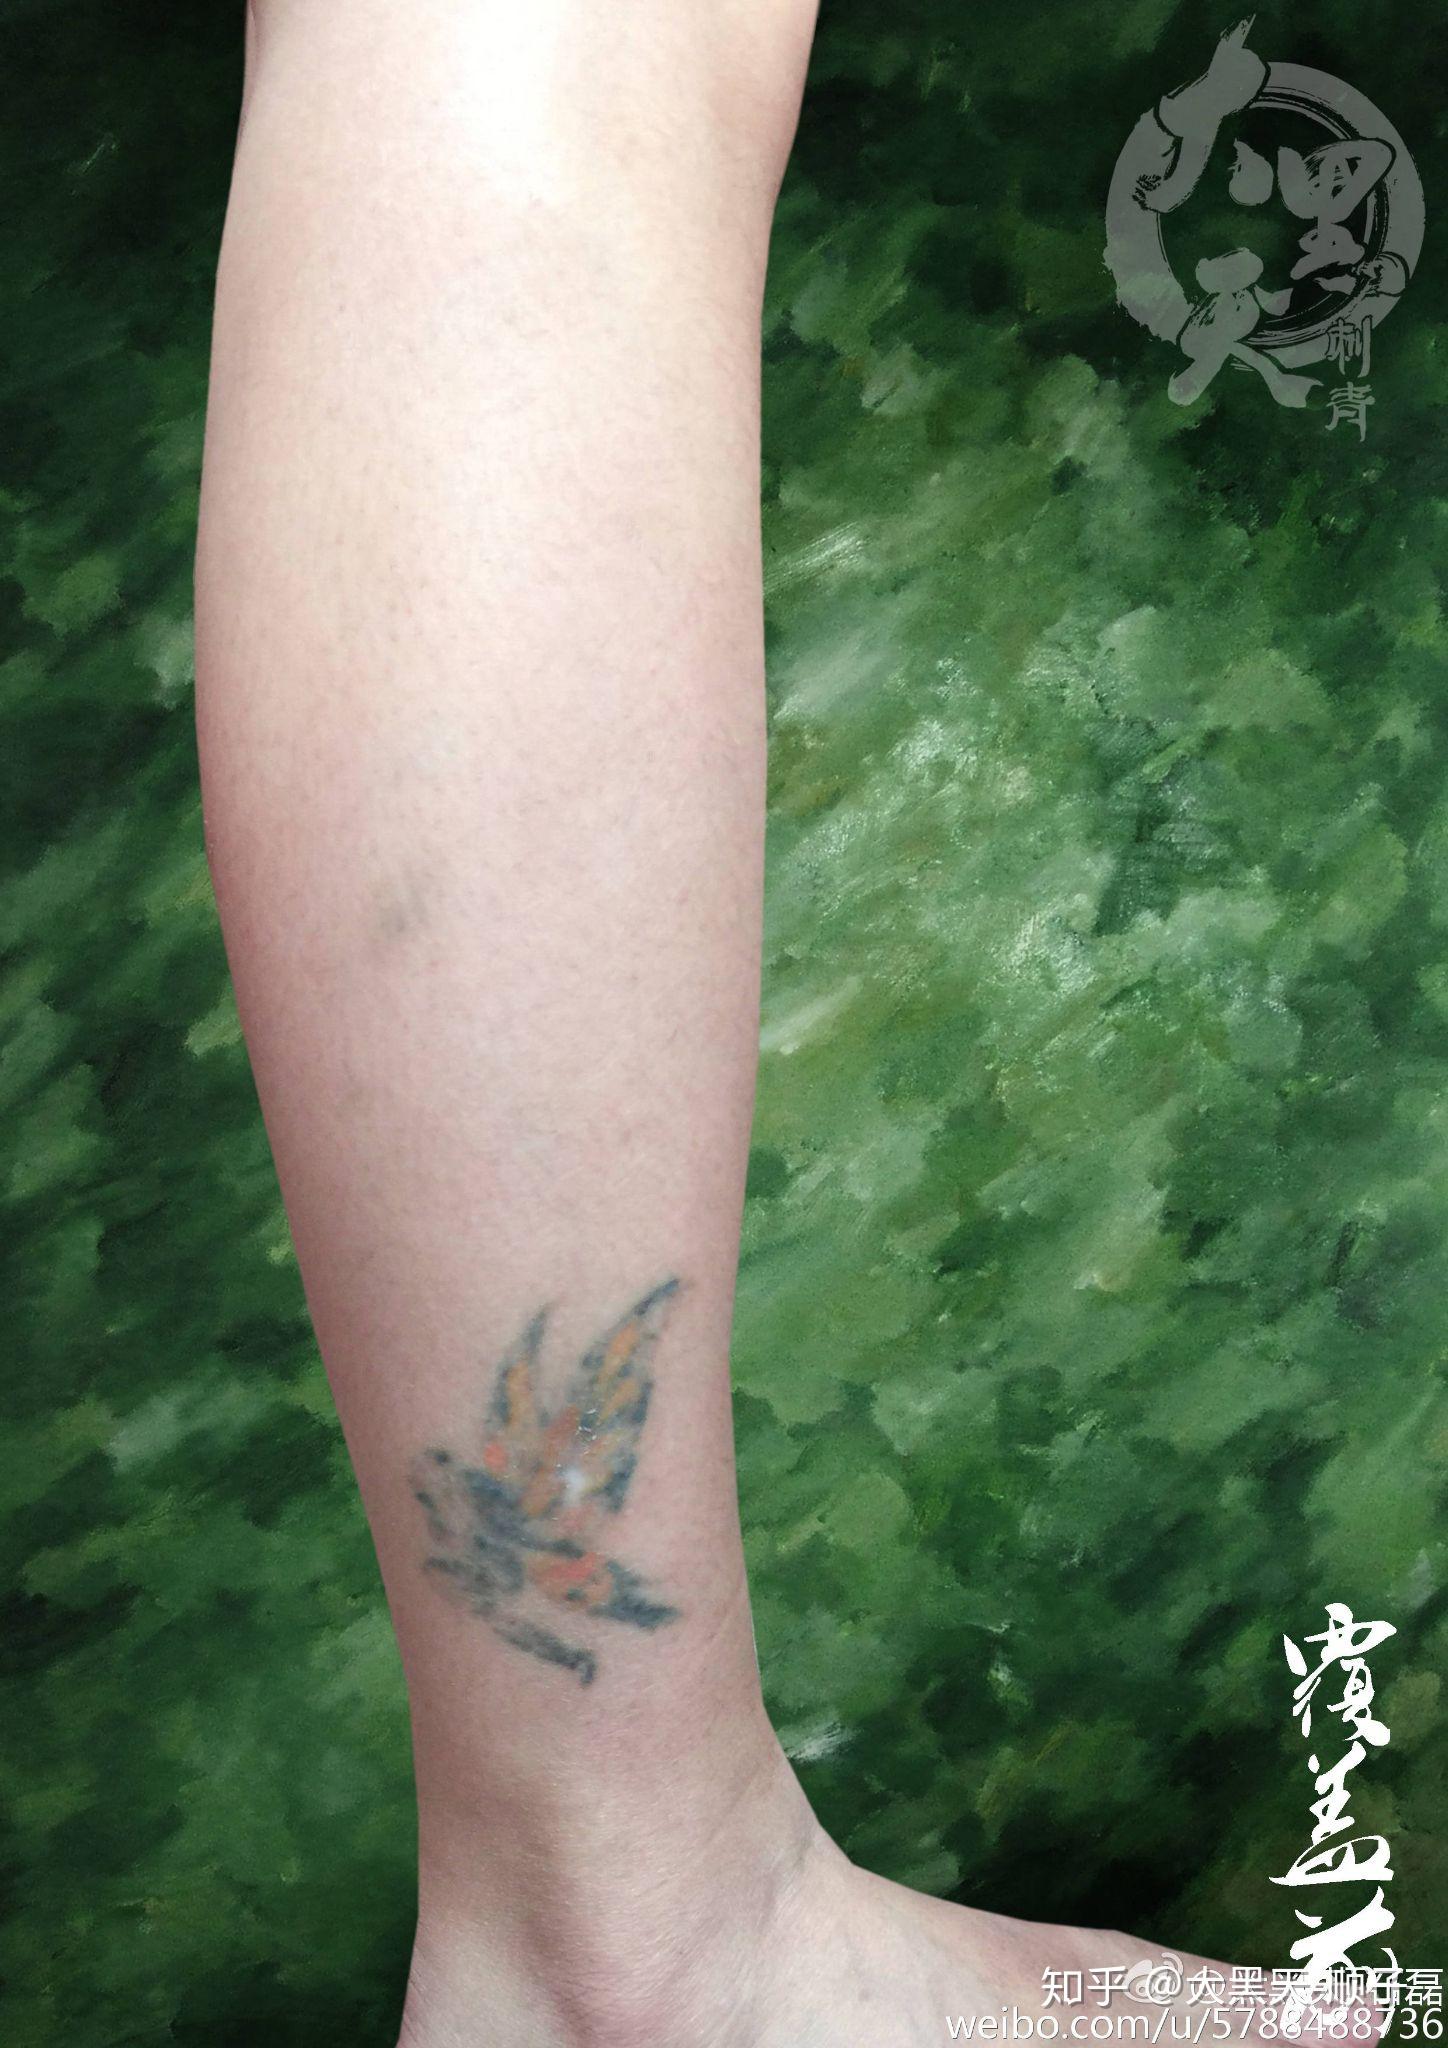 金鱼_湖北老兵武汉纹身培训学校|专业纹身学校|打造最好的纹身学校:是您学习纹身技术,纹绣培训,人体穿刺等专业技能的知名学校，学纹身包教包会。